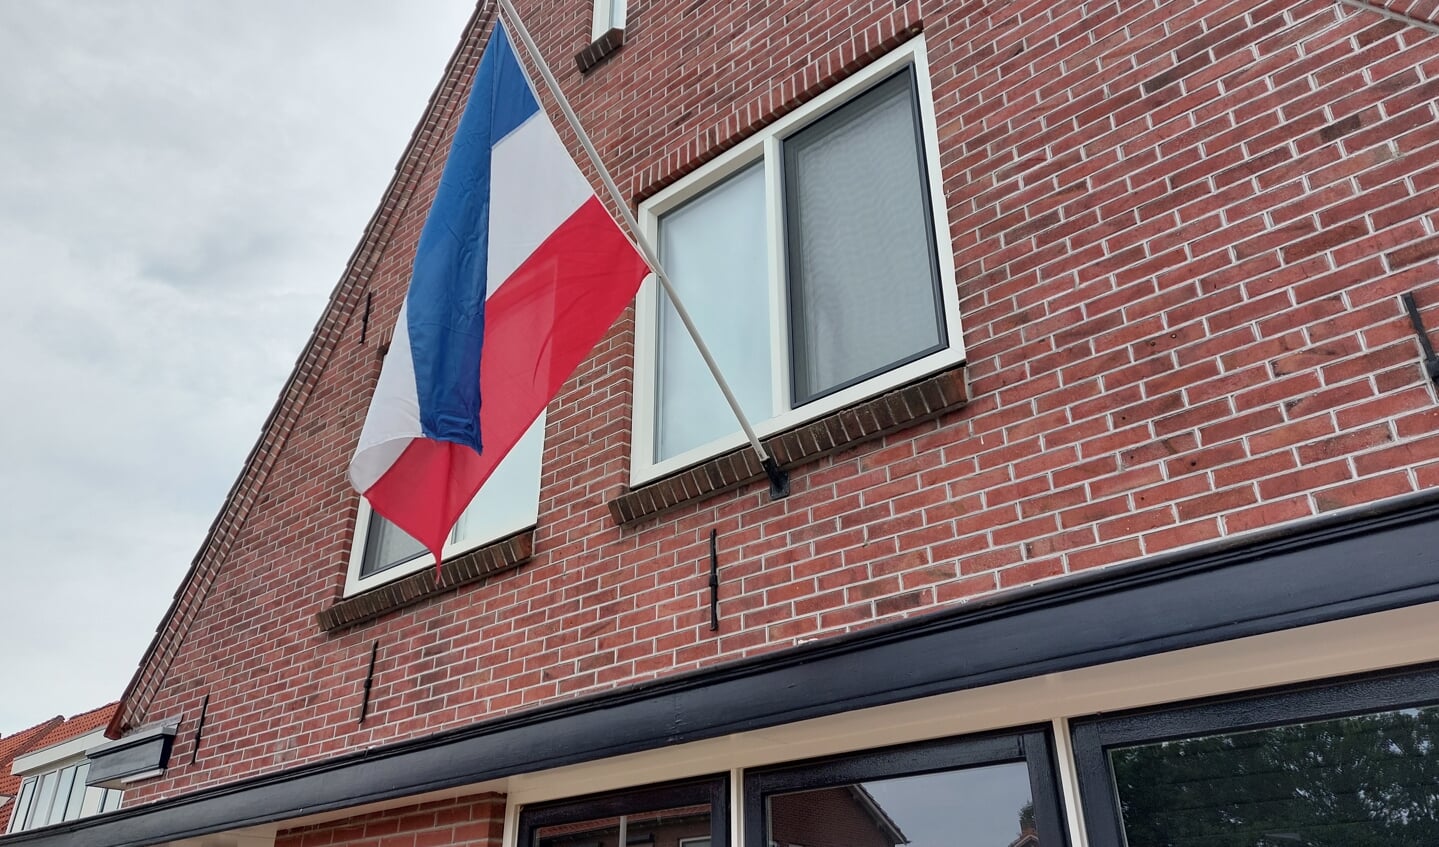 De omgekeerde vlaggen zijn nagenoeg uit het straatbeeld verdwenen, alleen op een enkele woning wappert deze nog. Foto: Han van de Laar